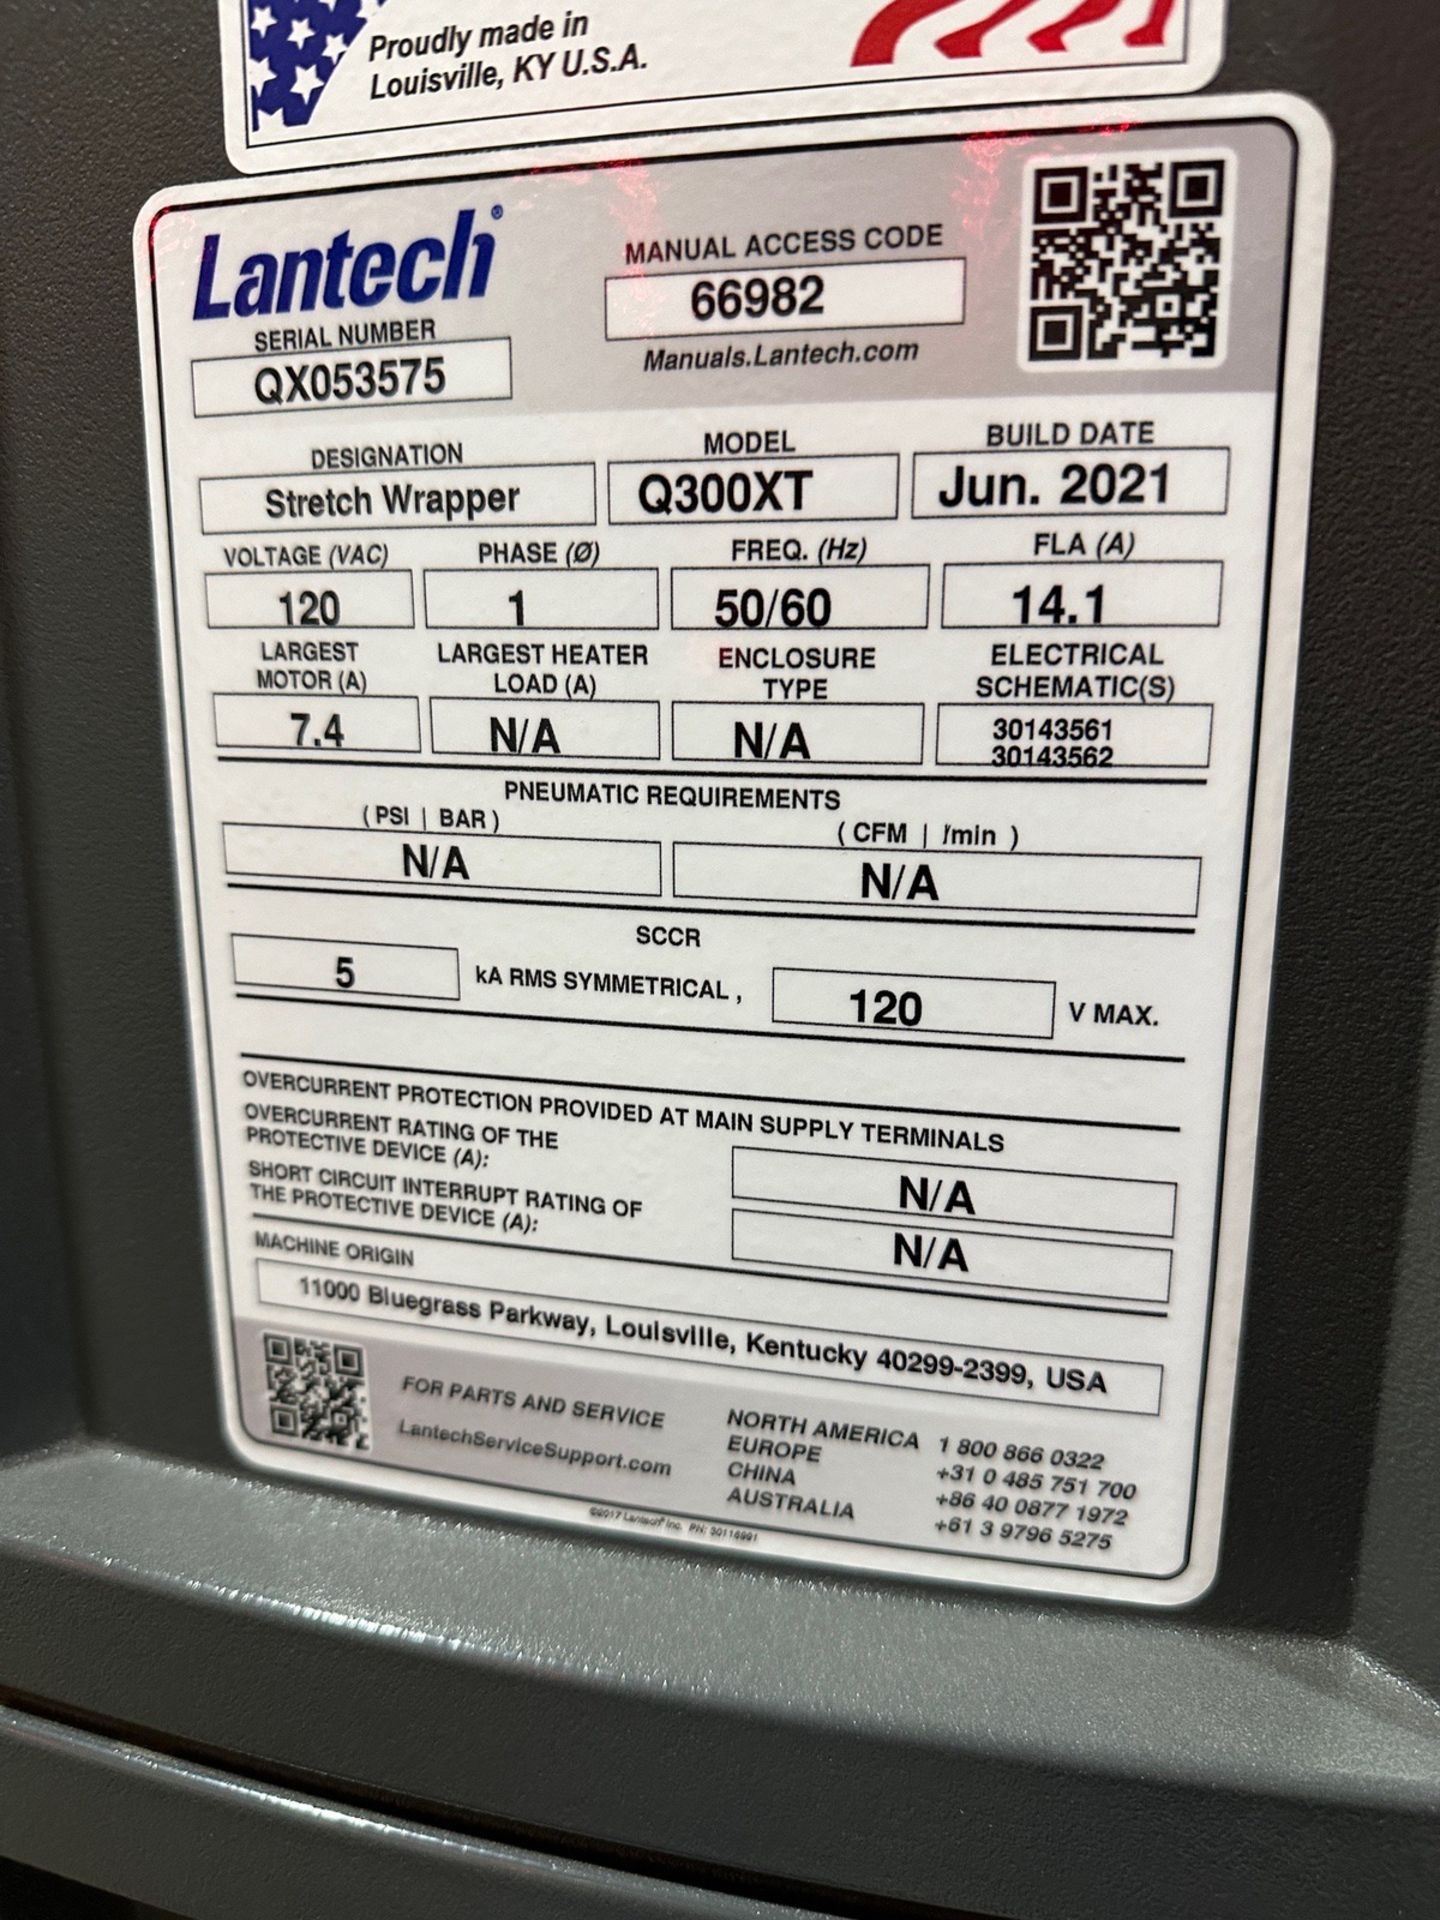 Lantech Pallet Wrapper - Model Q300XT - Image 4 of 4